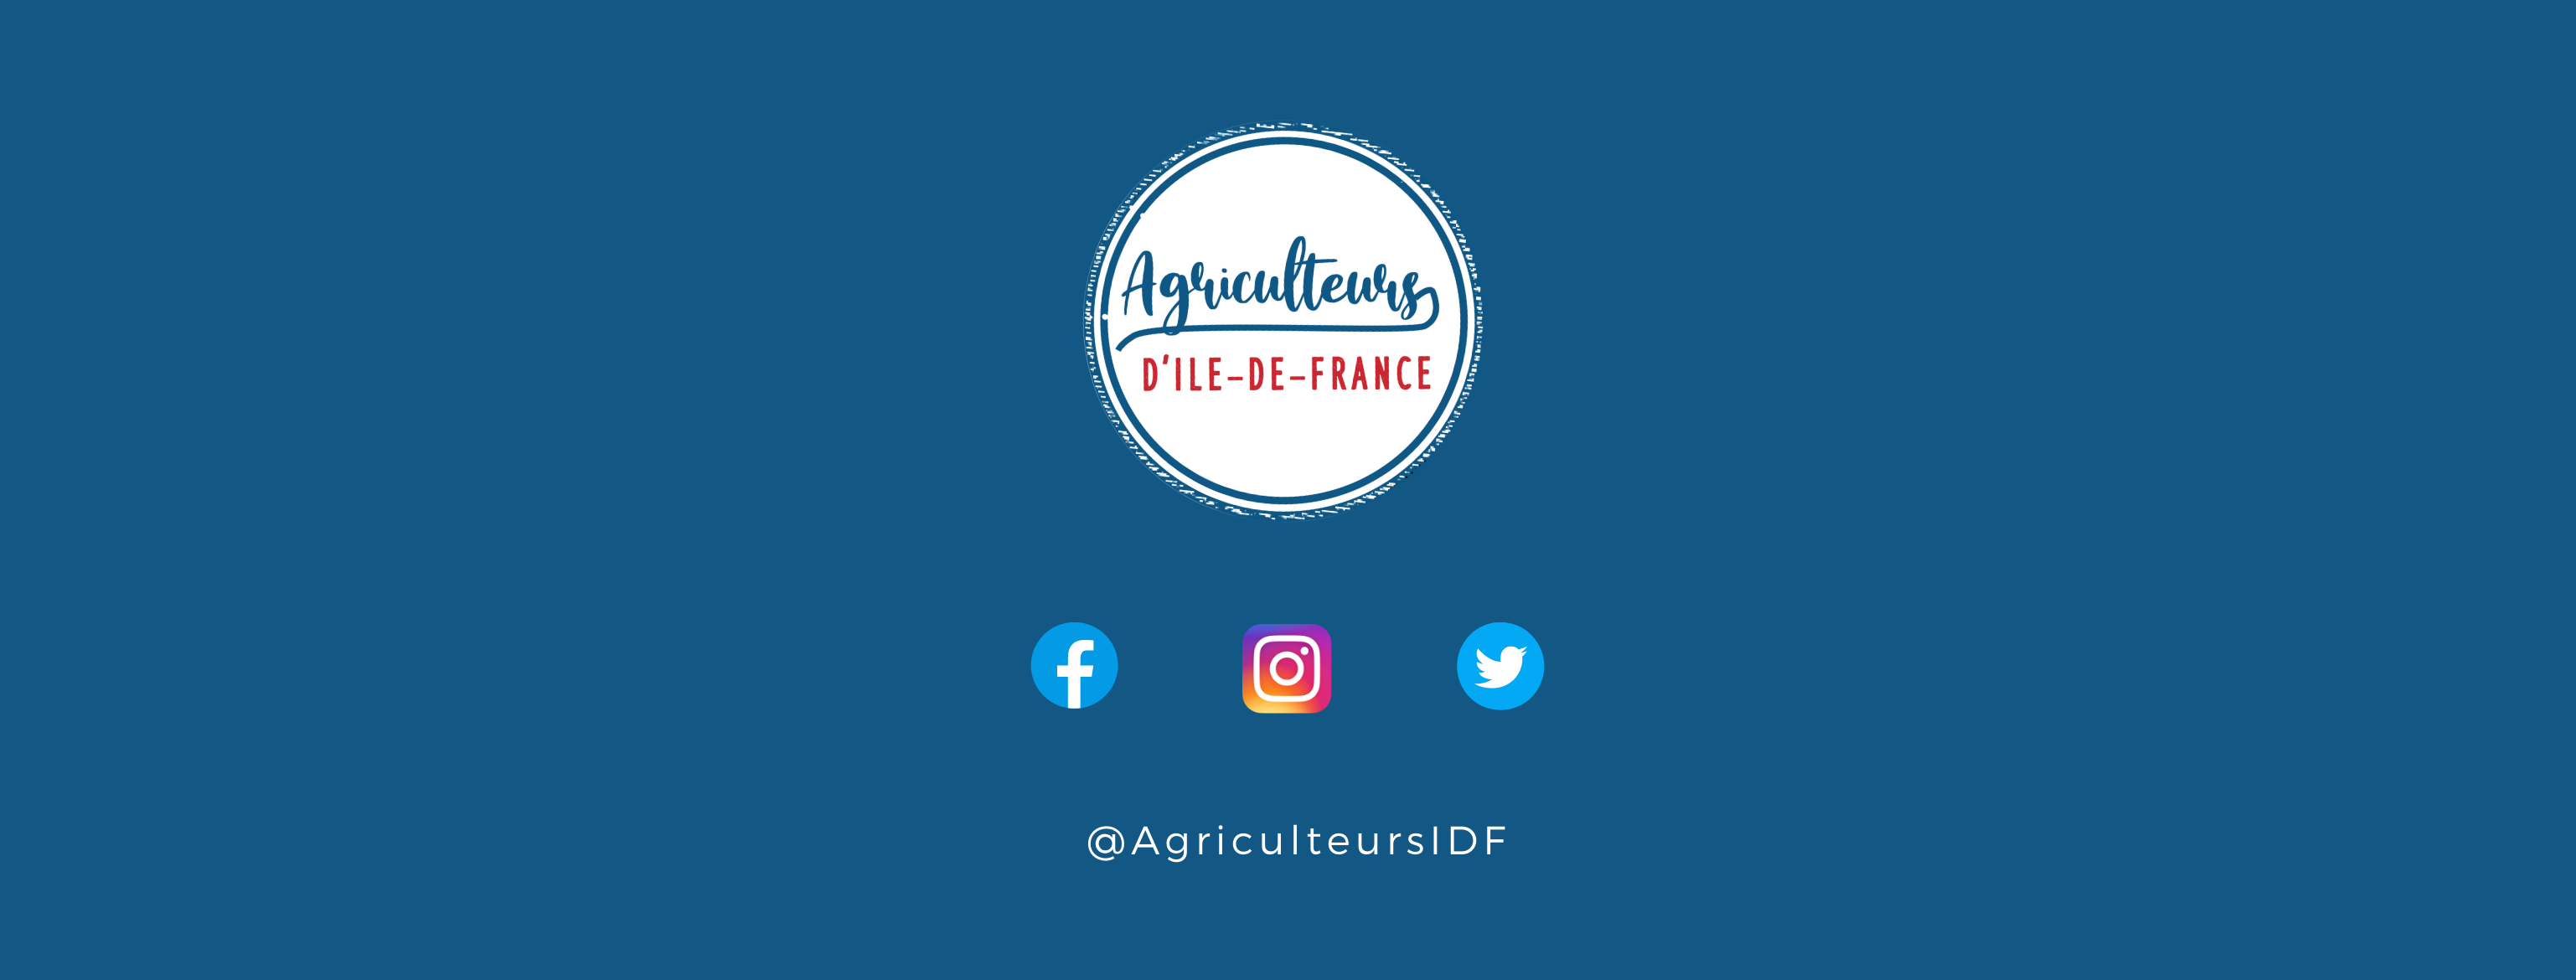 Agriculteurs d’Île-de-France sur les réseaux sociaux. #AgriculteursIDF